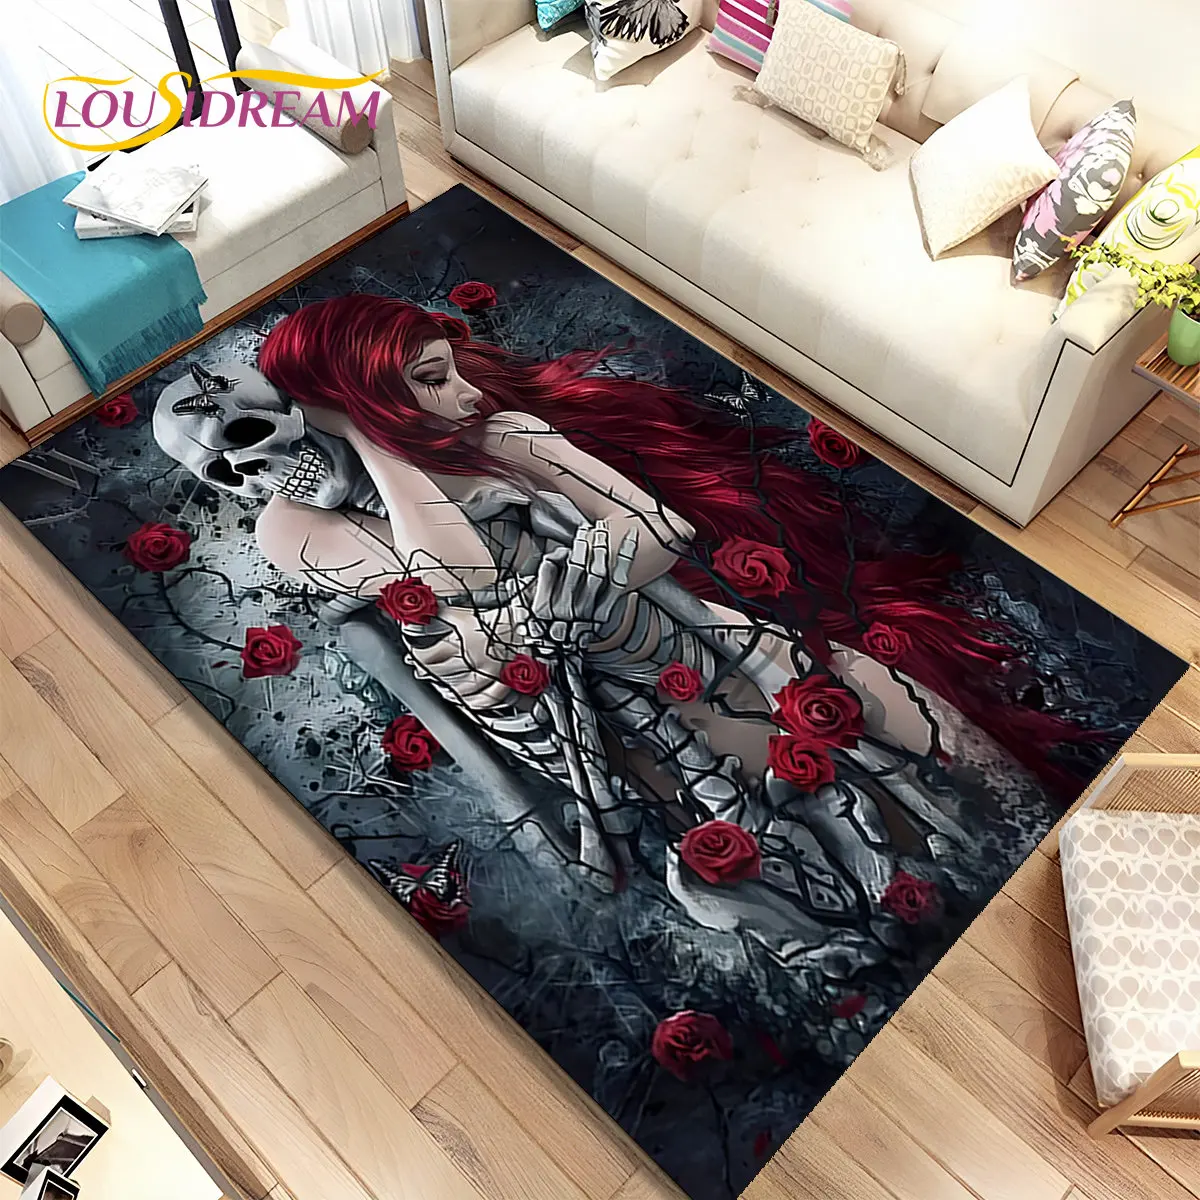 

Gothic Horror Female Skull Dead Girl Area Rug,Carpet Rug for Home Living Room Bedroom Sofa Doormat Decor,kids Non-slip Floor Mat